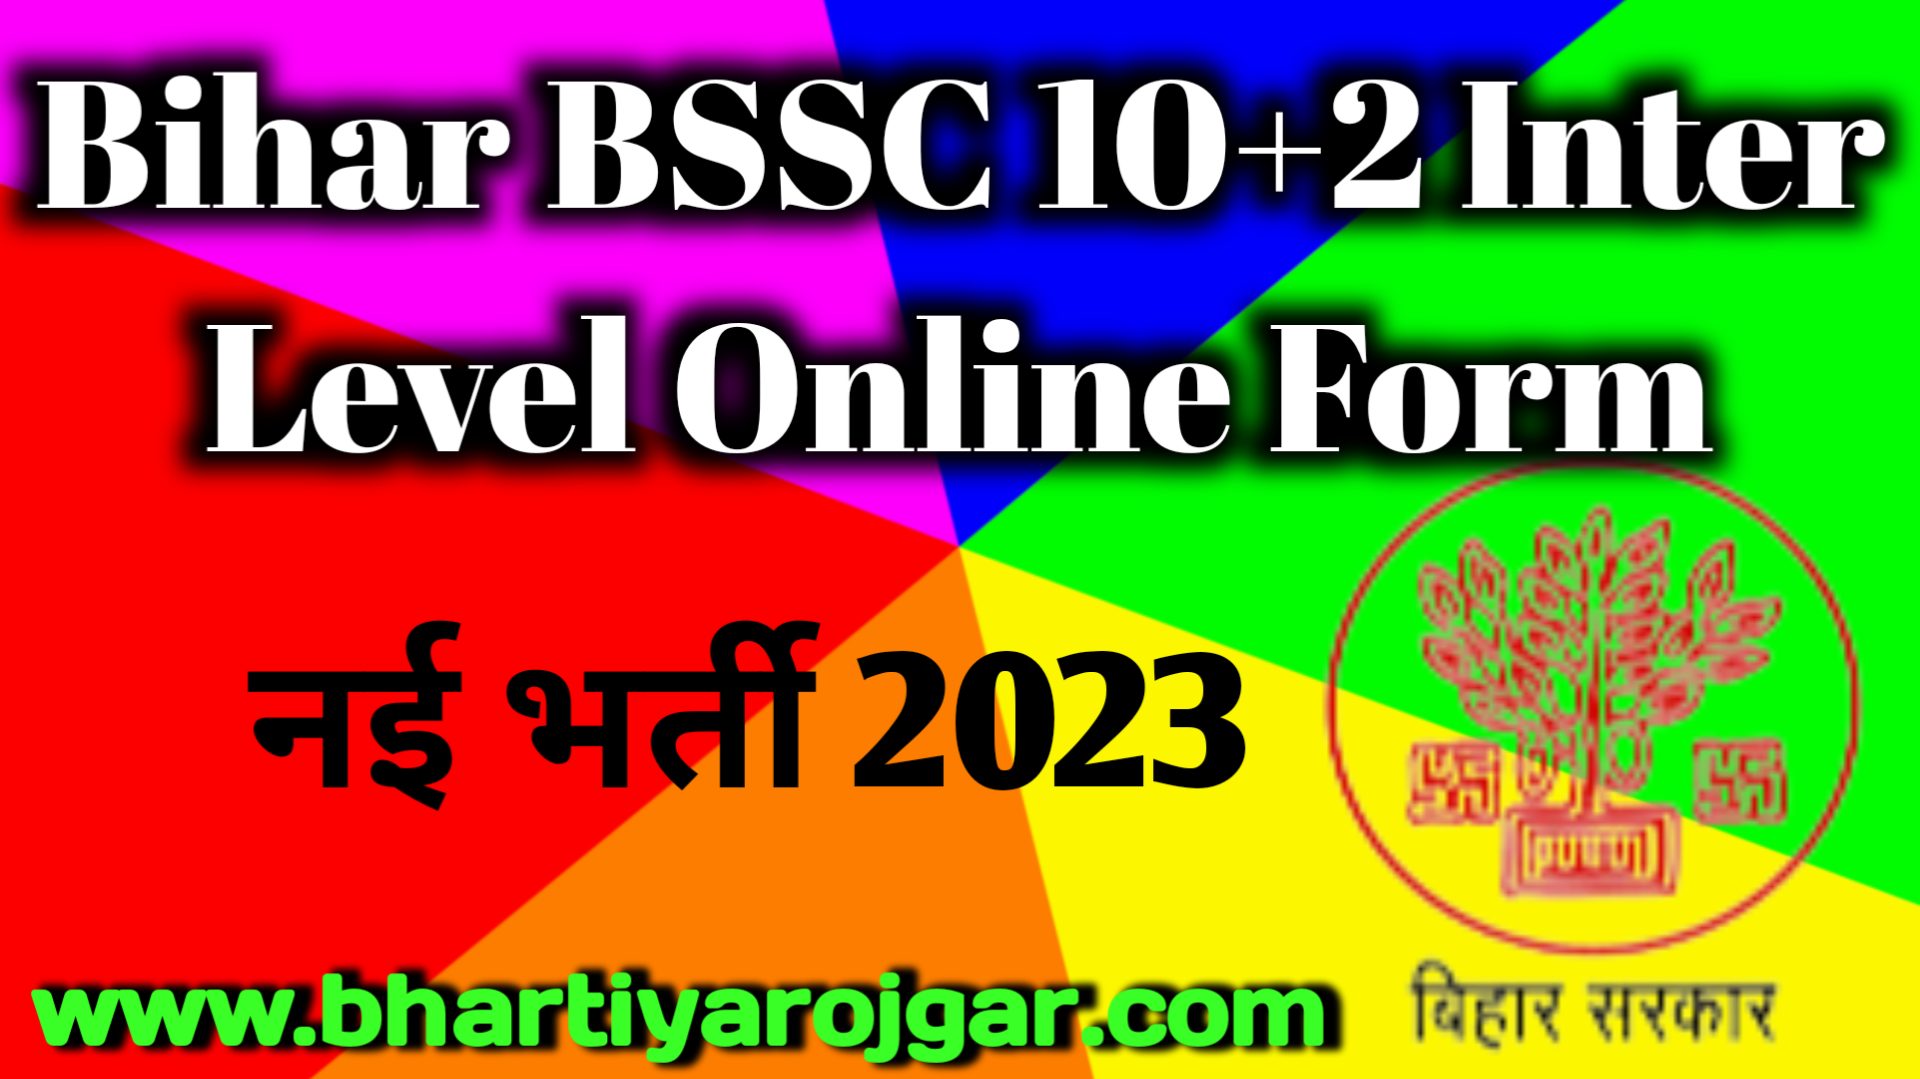 Bihar BSSC 10+2 Inter Level Online Form 2023